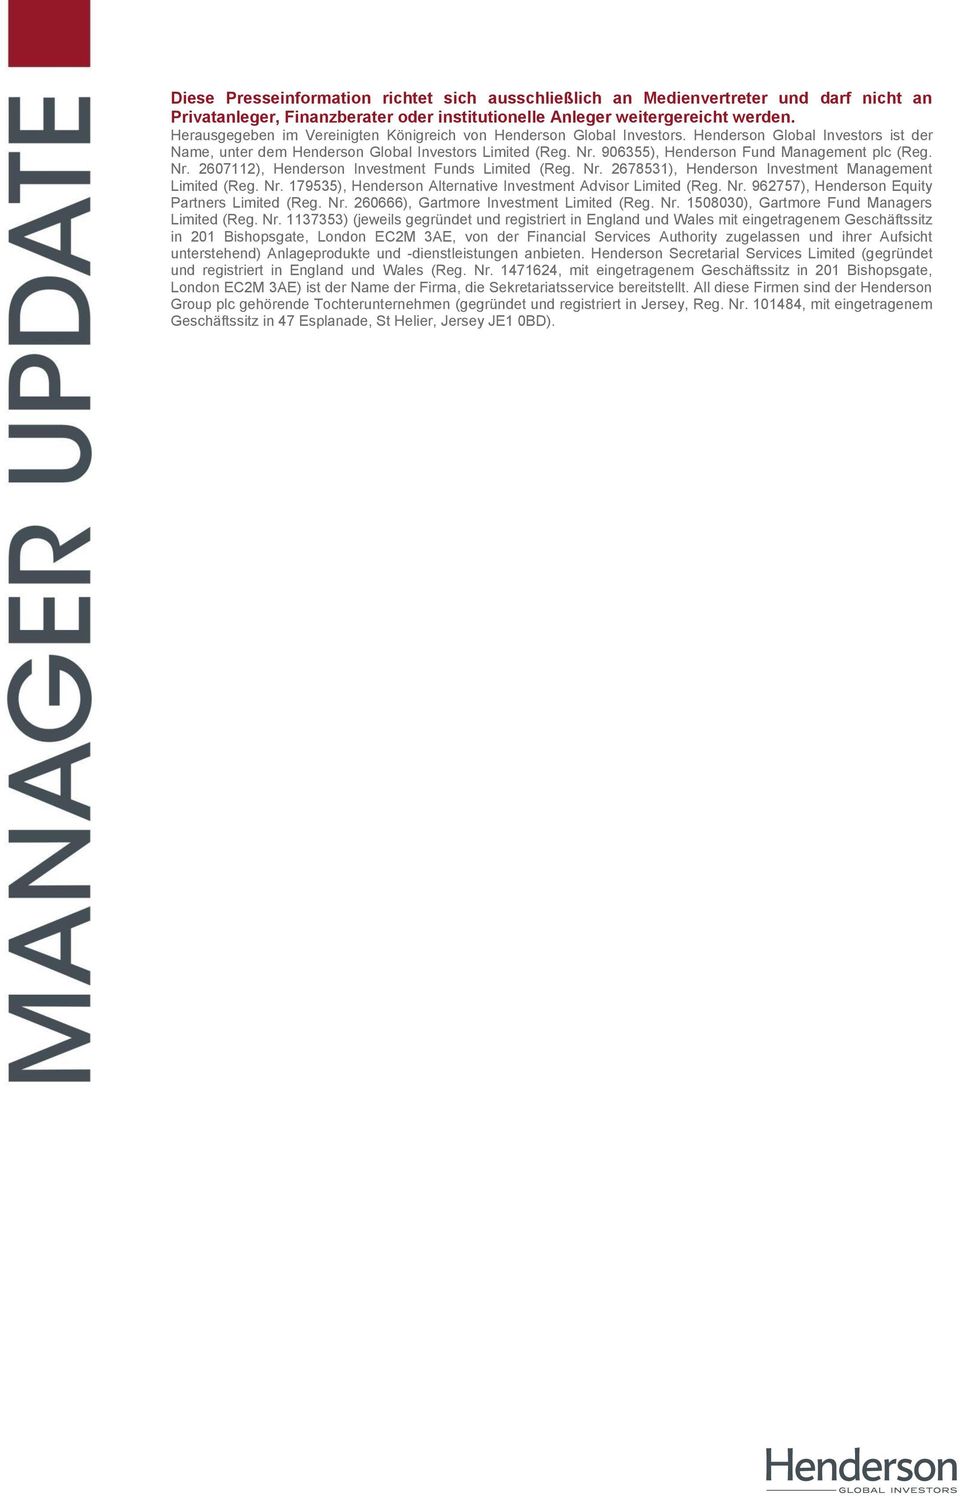 906355), Henderson Fund Management plc (Reg. Nr. 2607112), Henderson Investment Funds Limited (Reg. Nr. 2678531), Henderson Investment Management Limited (Reg. Nr. 179535), Henderson Alternative Investment Advisor Limited (Reg.